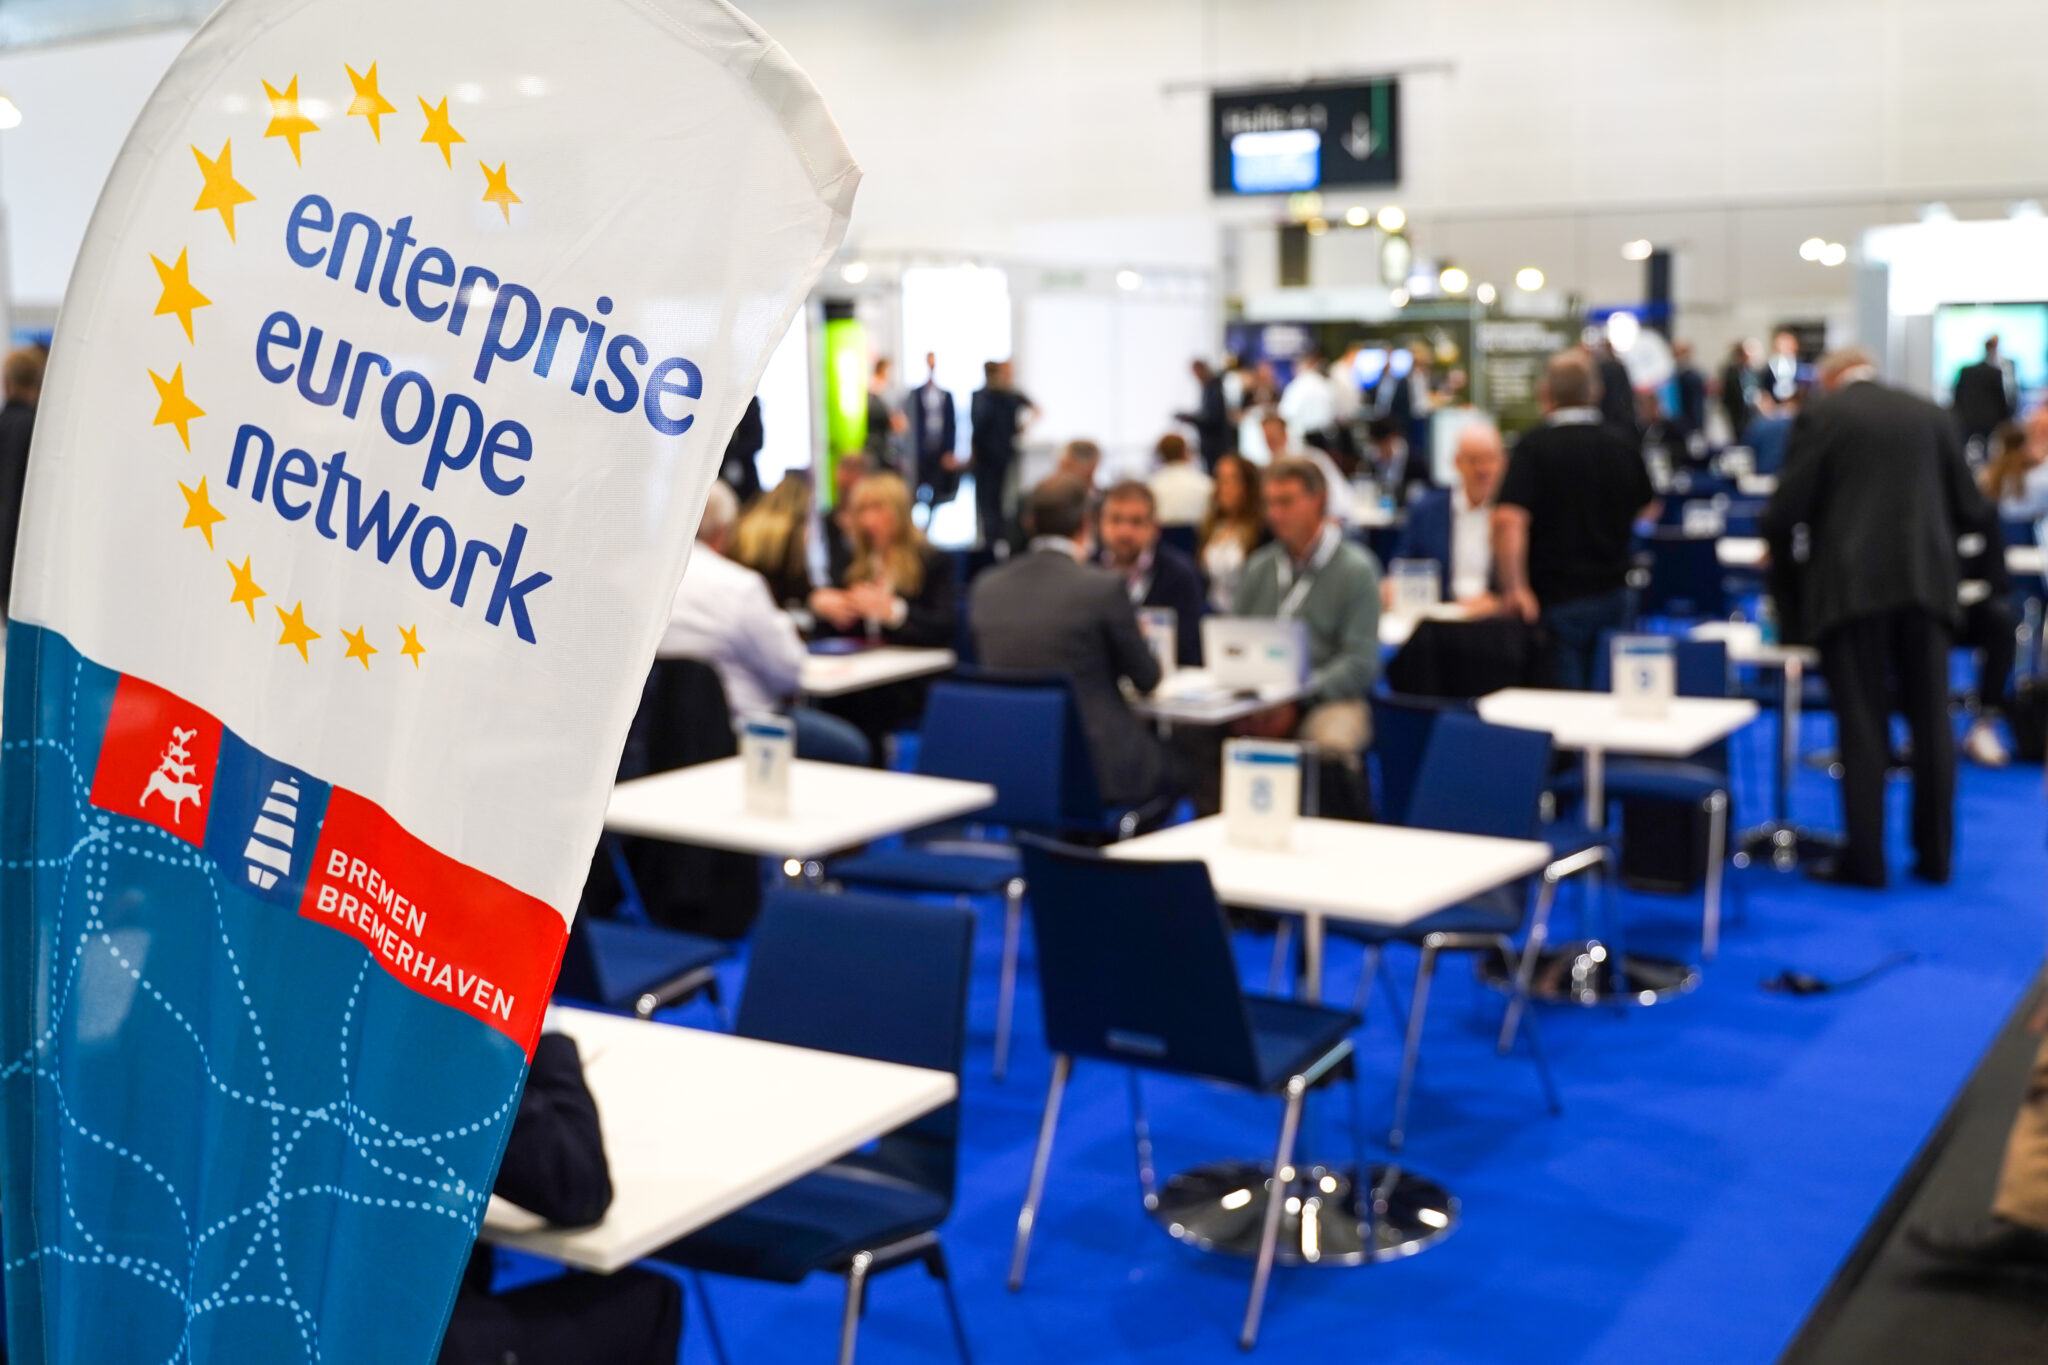 Im Fokus der Kamera eine Fahne mit der Aufschrift: enterprise europe network Im Hintergrund stehen mehrere Tische an denen ein paar Leute sitzen.